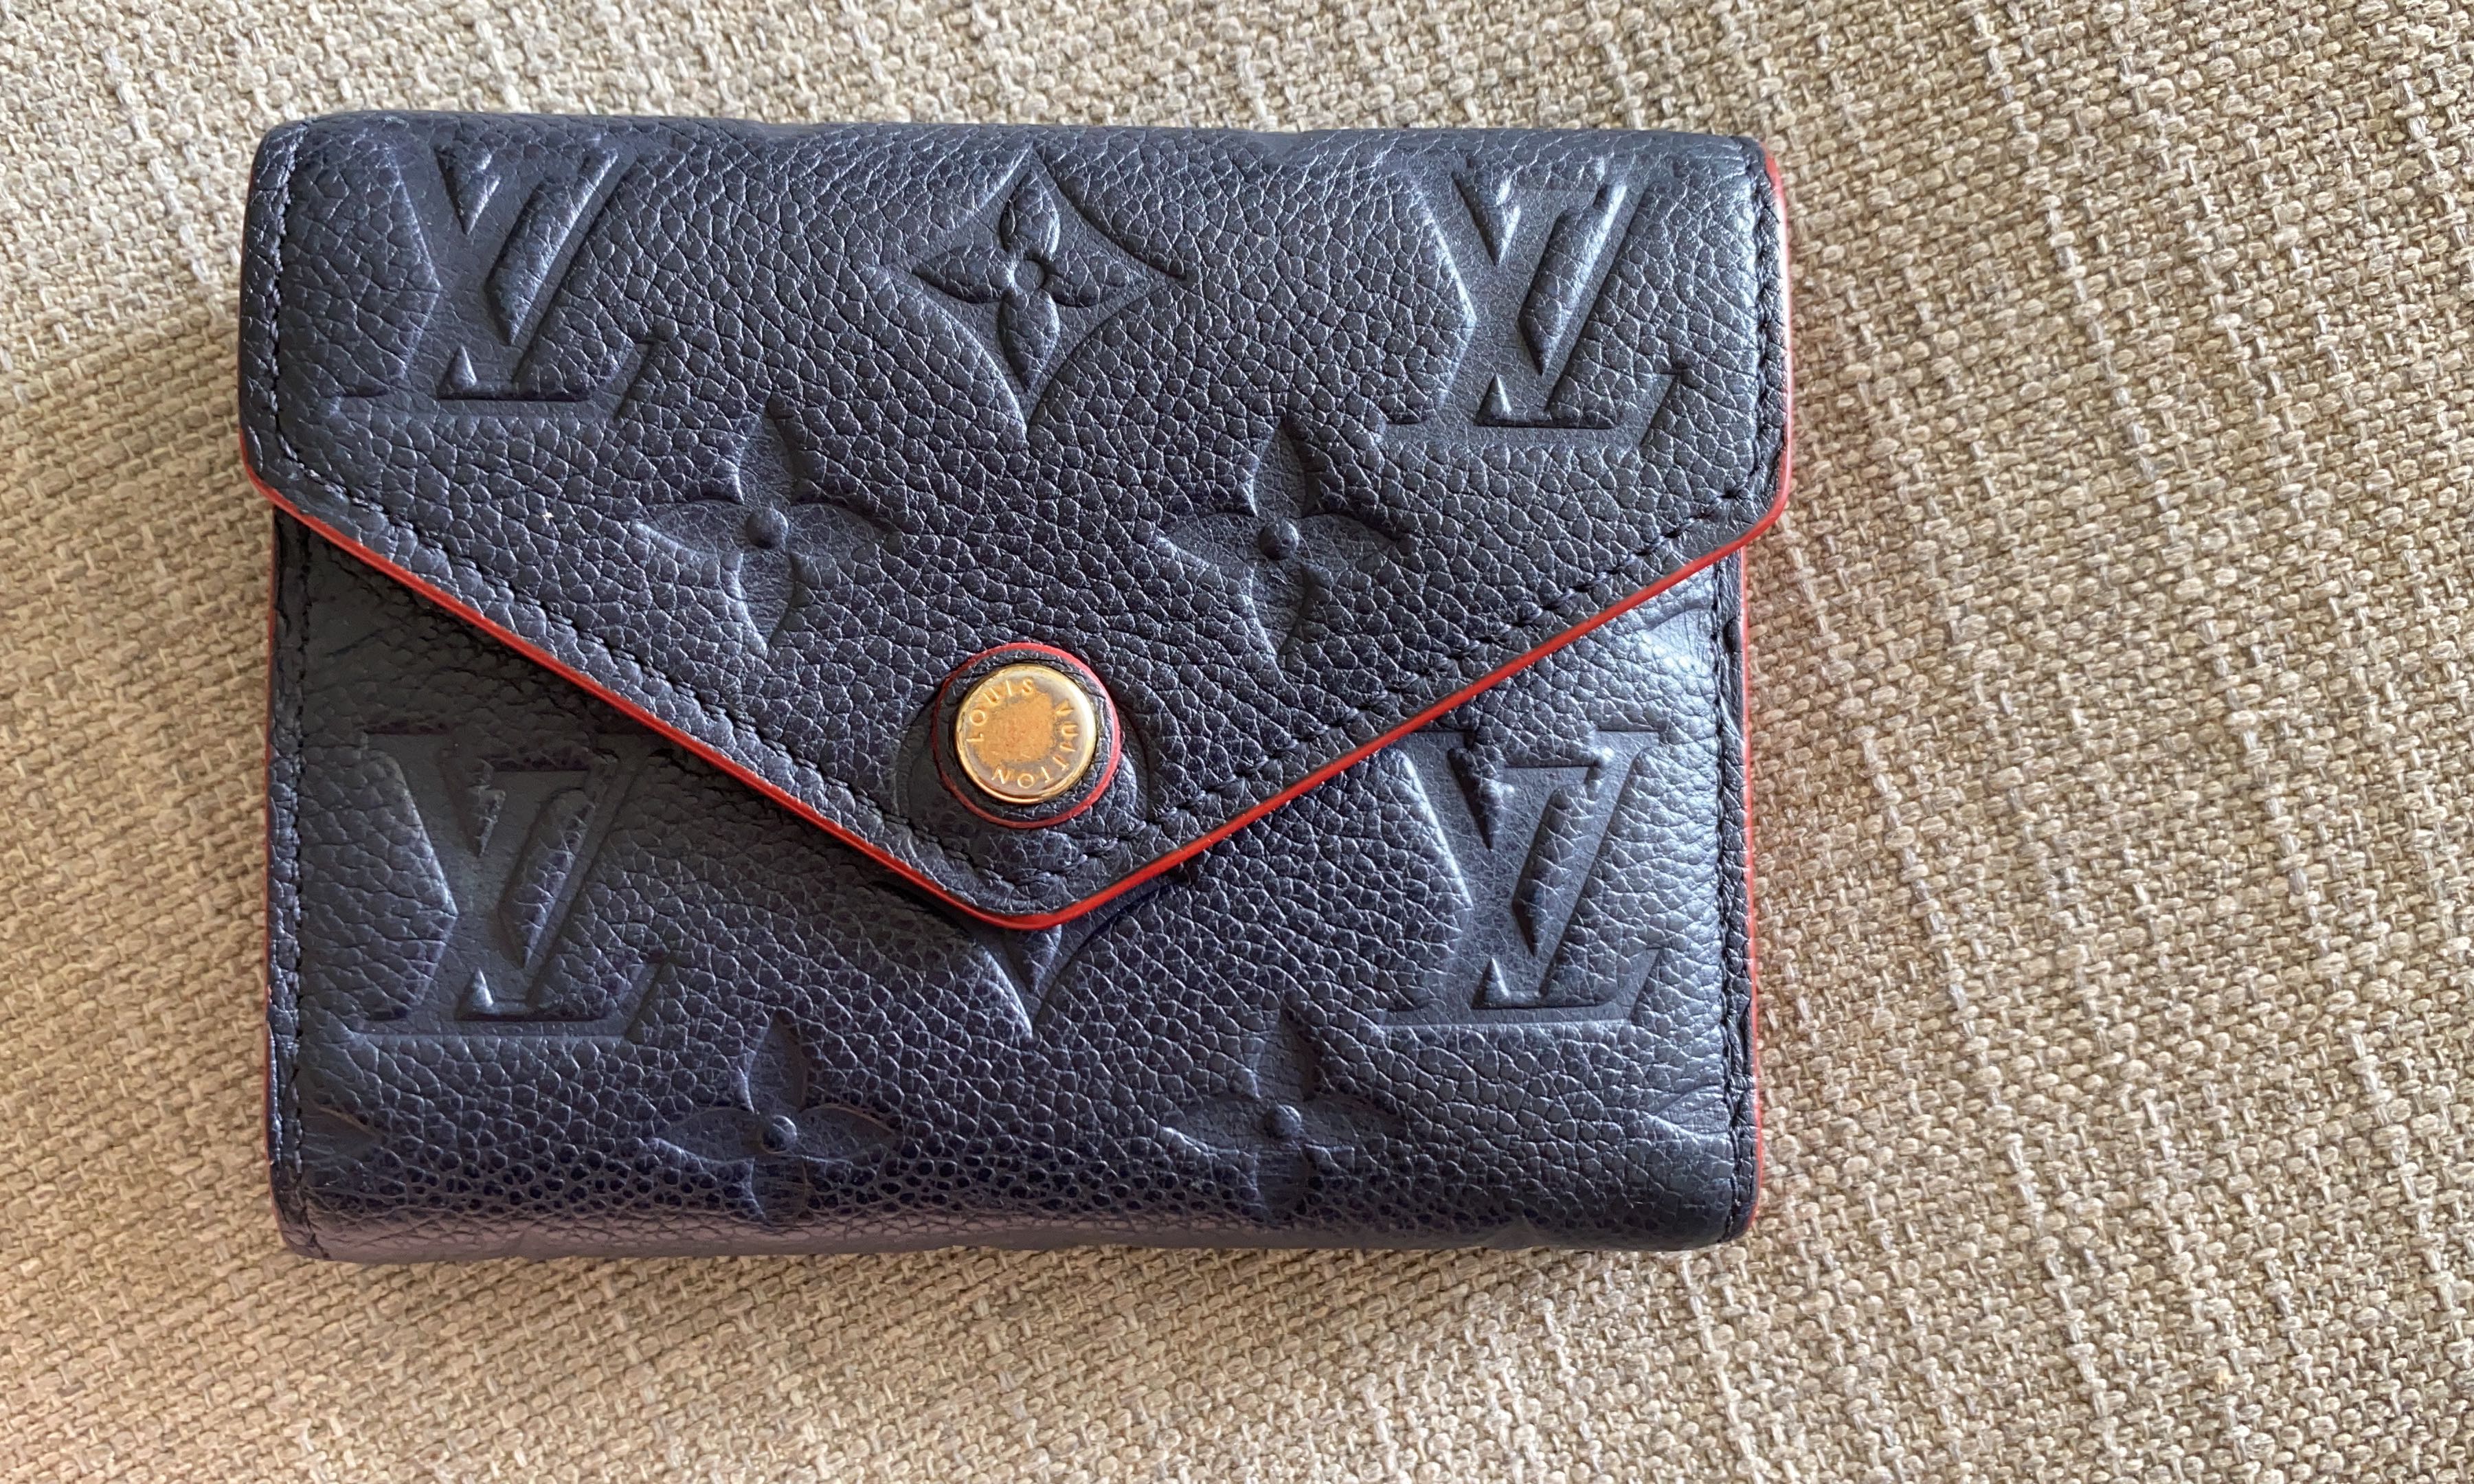 Louis Vuitton Marine Rogue Empreinte Monogram Leather Victorine Wallet